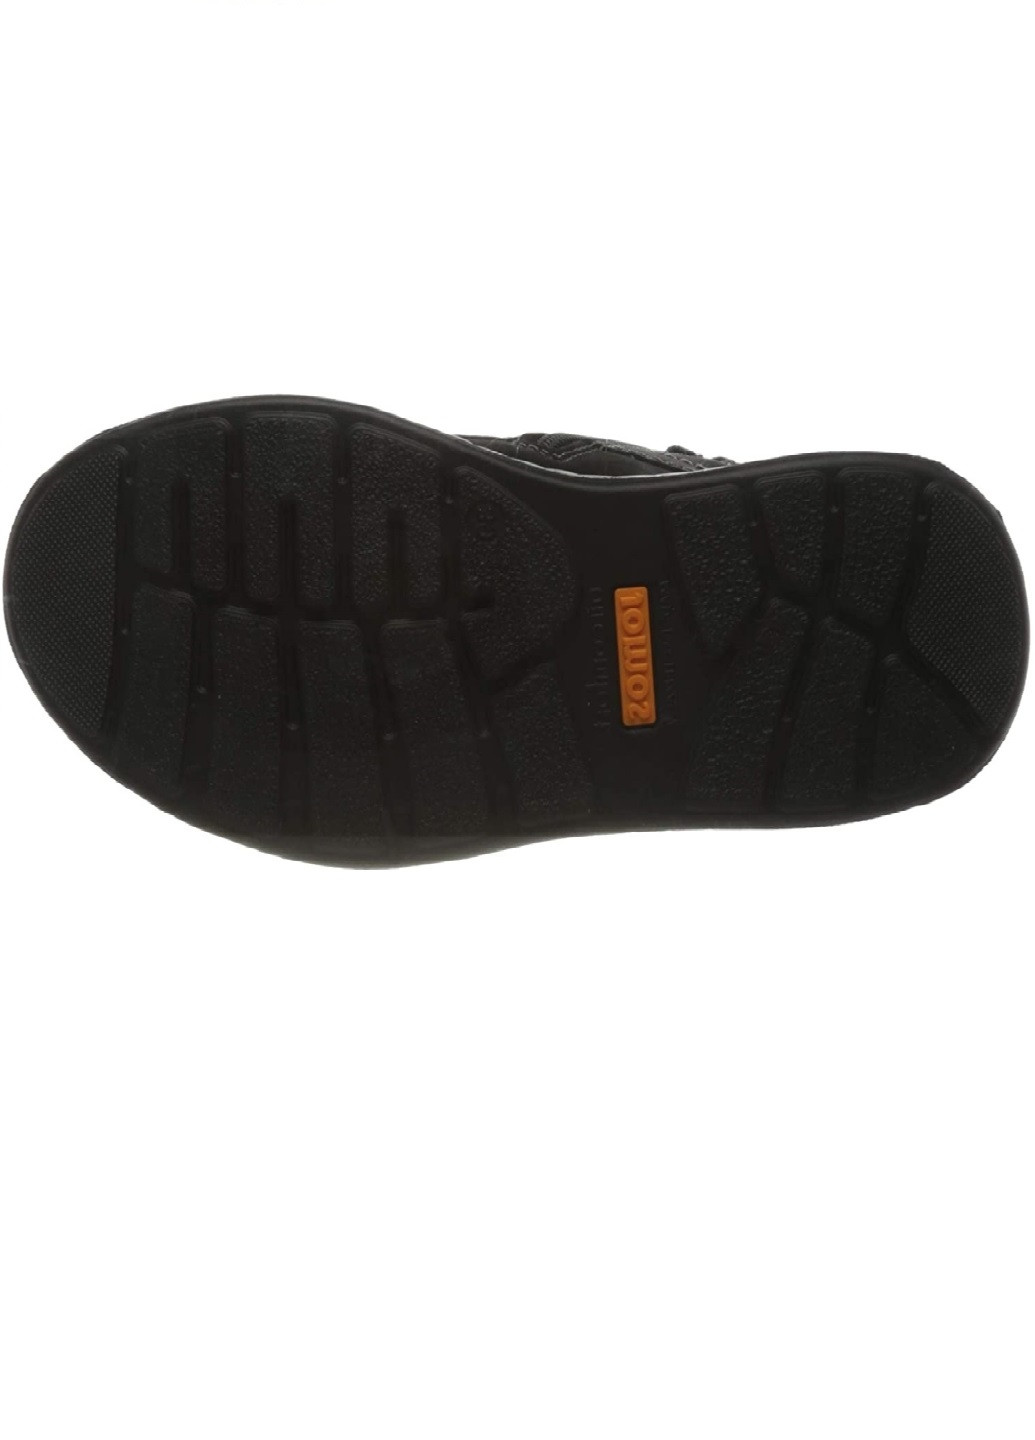 Черные осенние ботинки Jomos